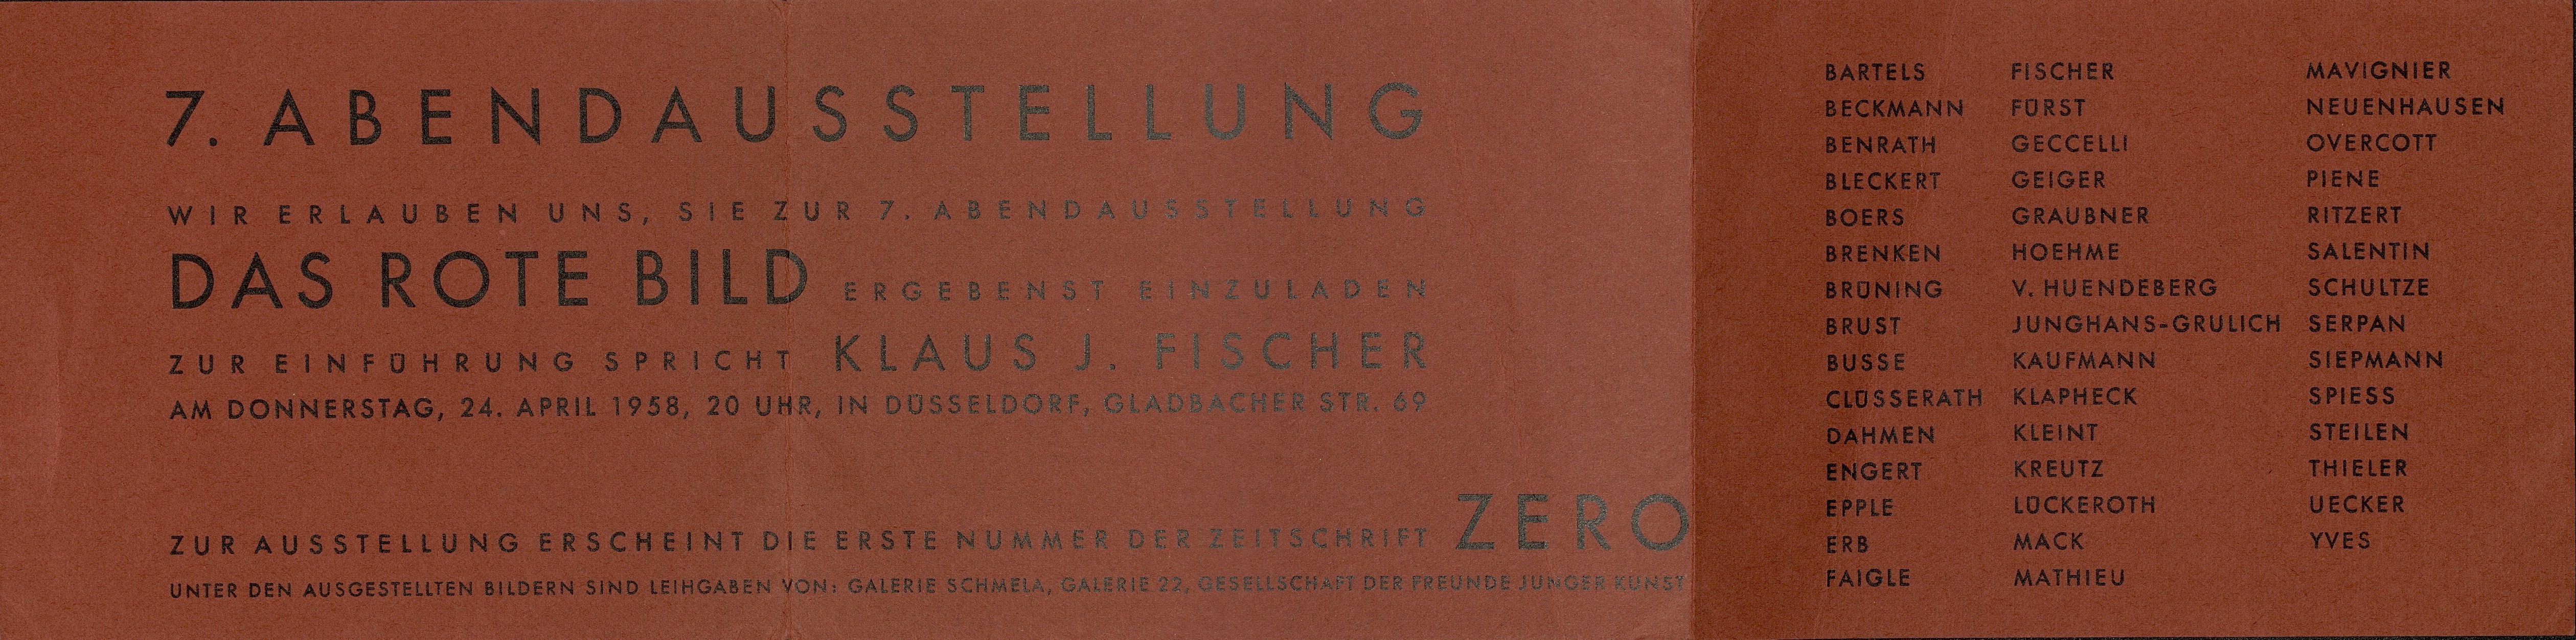 7. Abendausstellung der Gruppe ZERO, Düsseldorf 1958 (Invitation); Archiv der Avantgarden, Staatliche Kunstsammlungen Dresden